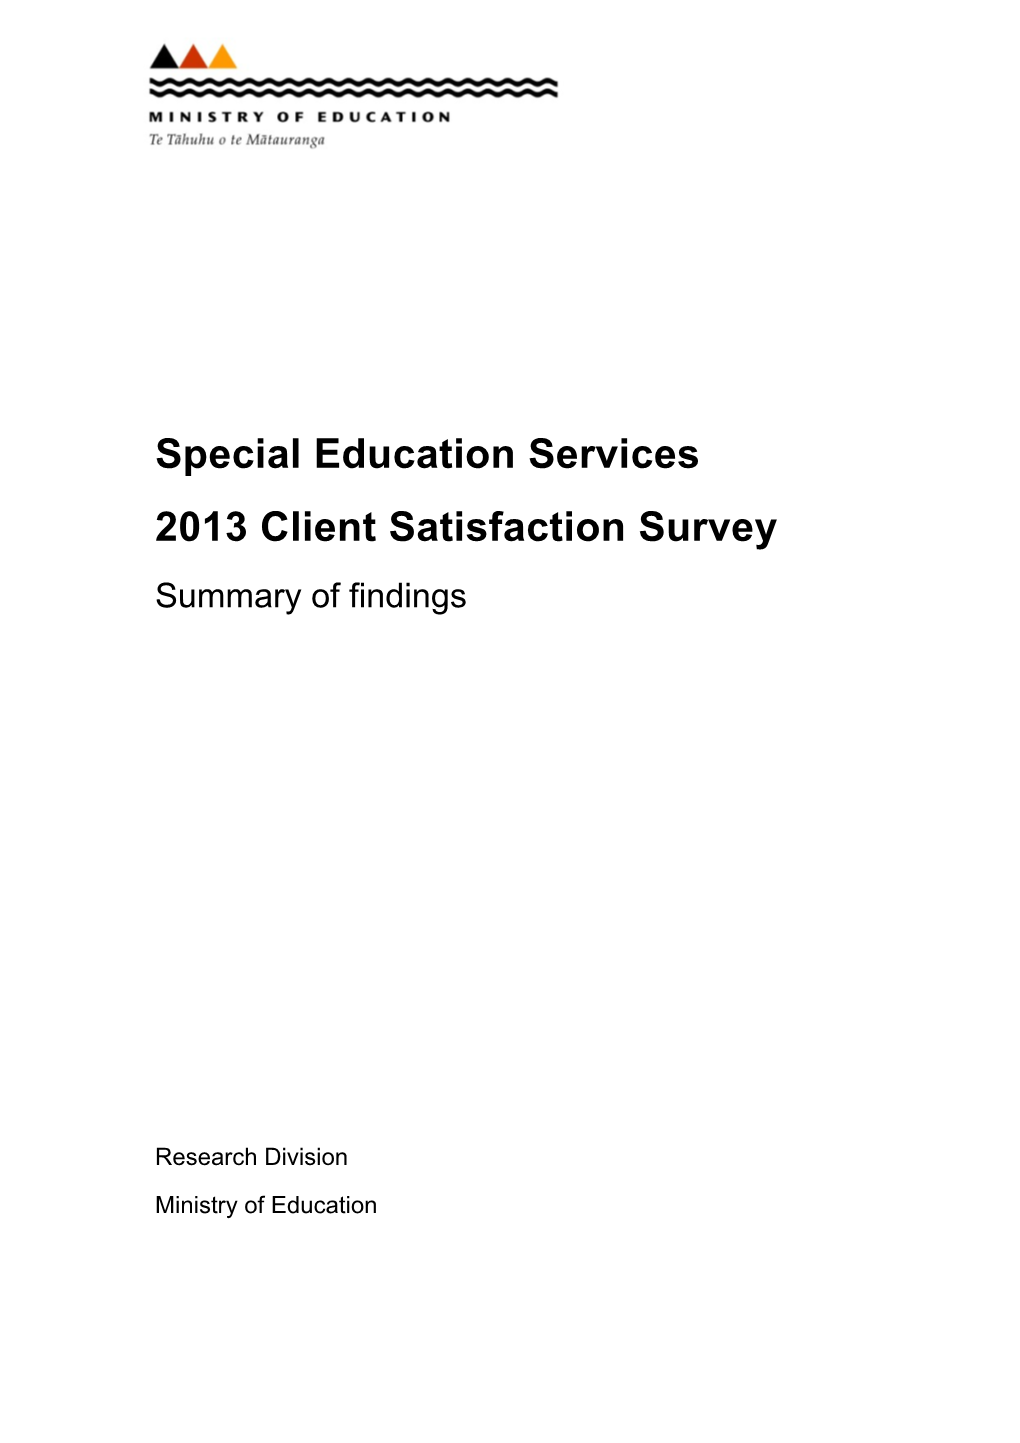 Special Education Services 2013 Client Satisfaction Survey